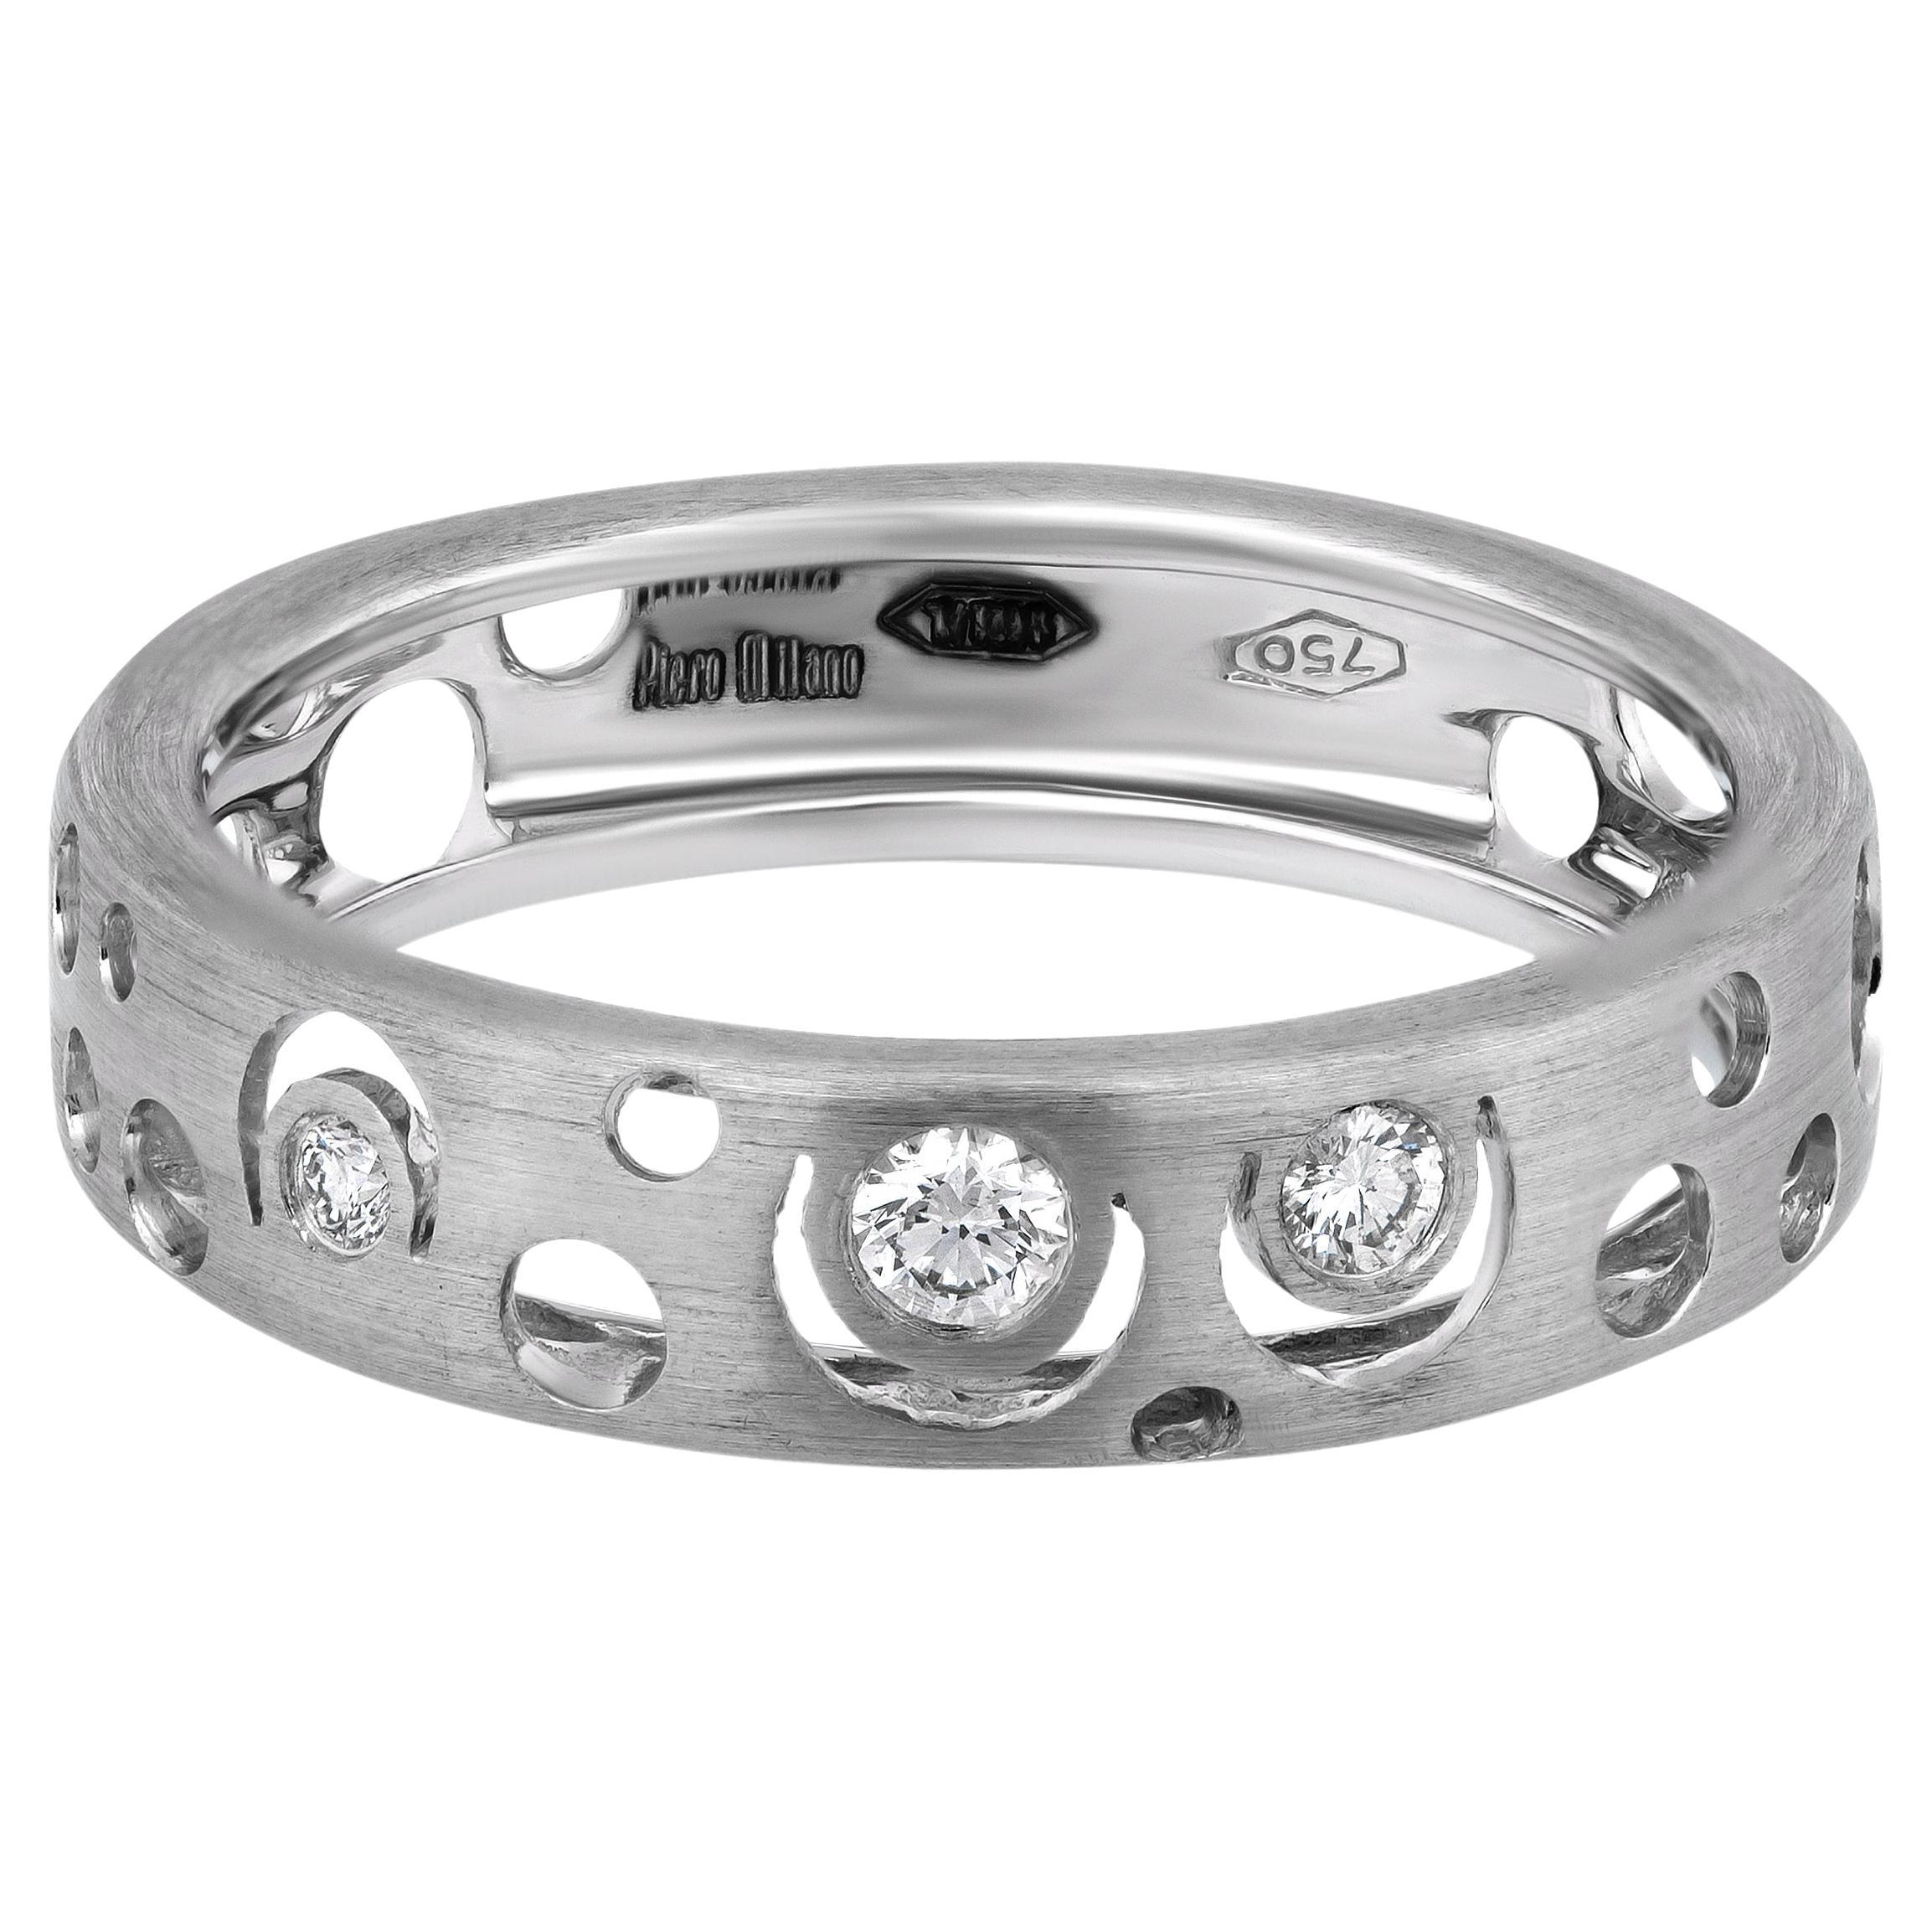 Piero Milano 18K White Gold Diamond Ring Sz 7.25 For Sale